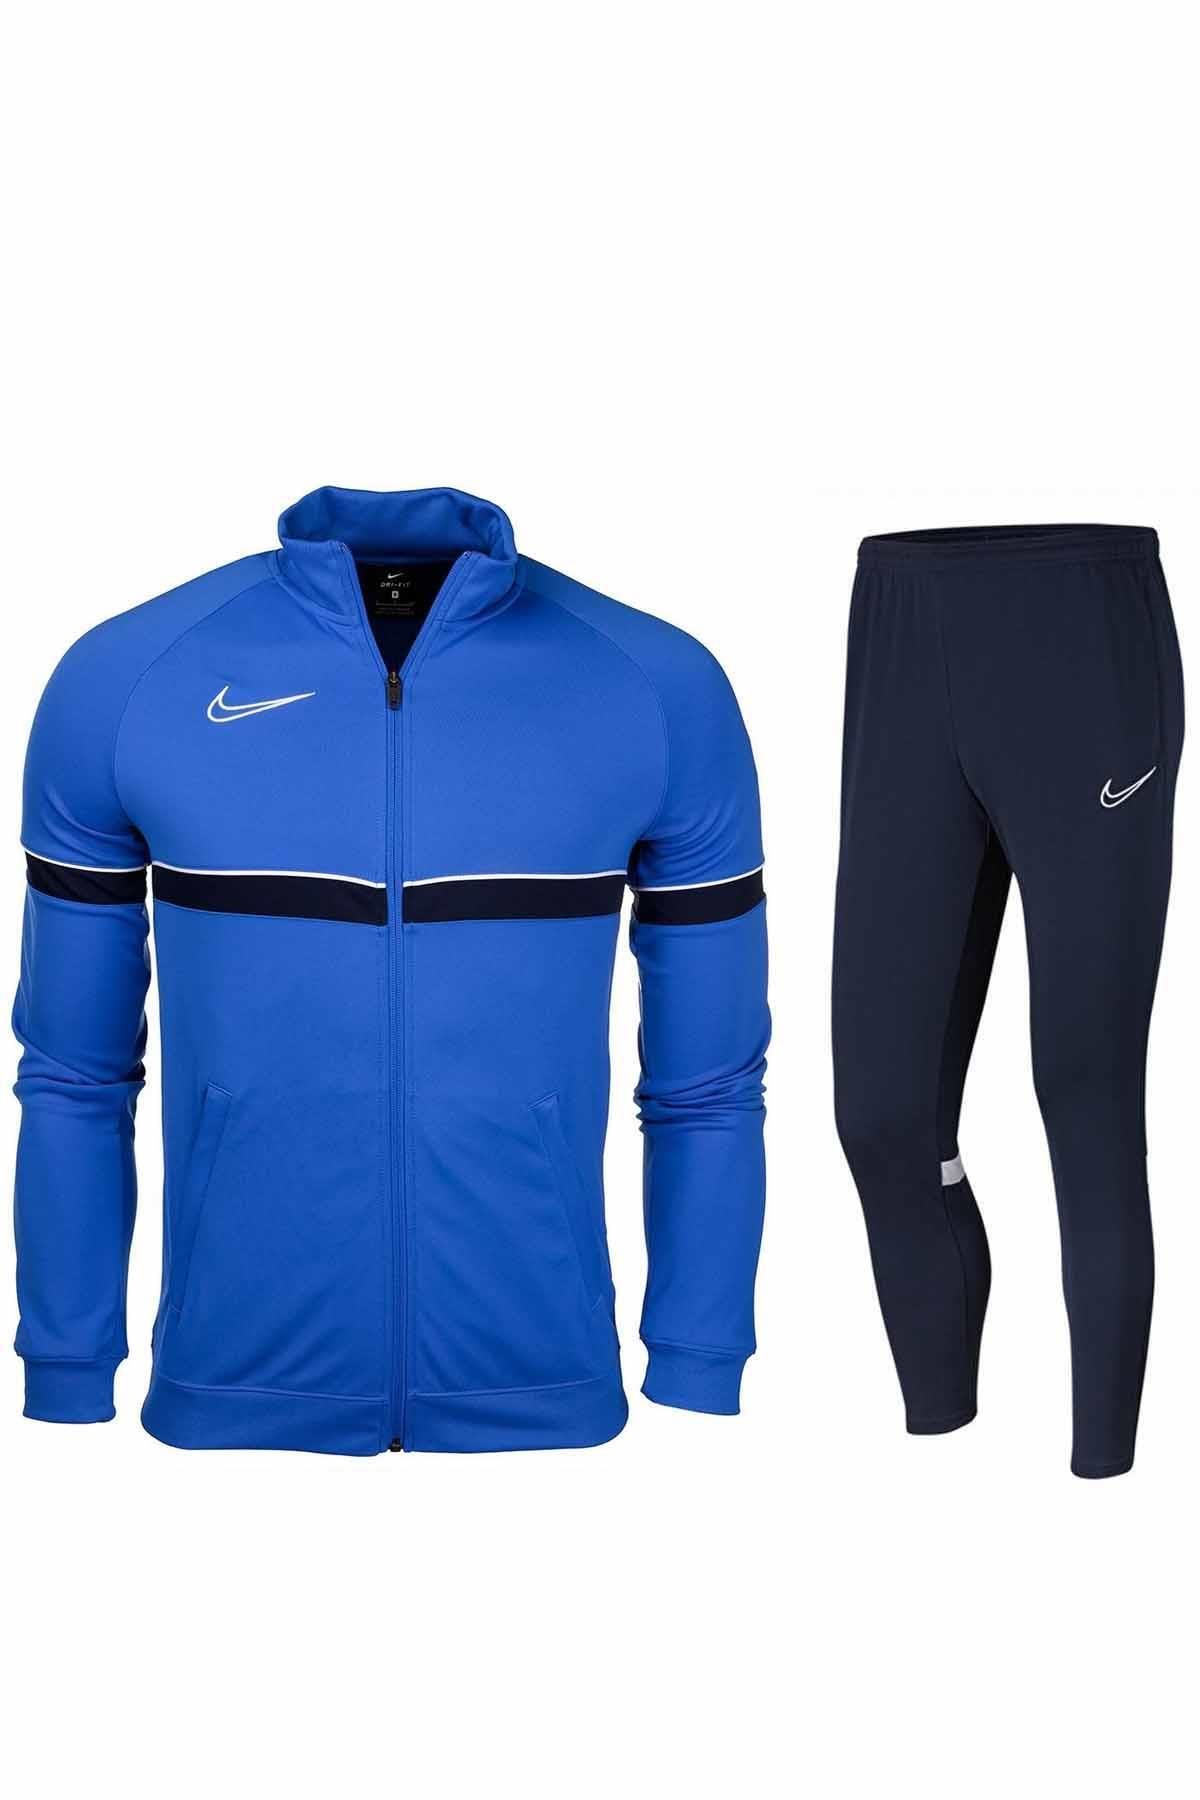 Nike B9 Raşel Kumaş Eşofman Takımı Erkek Eşofman Takım Nk6113-463-mavi